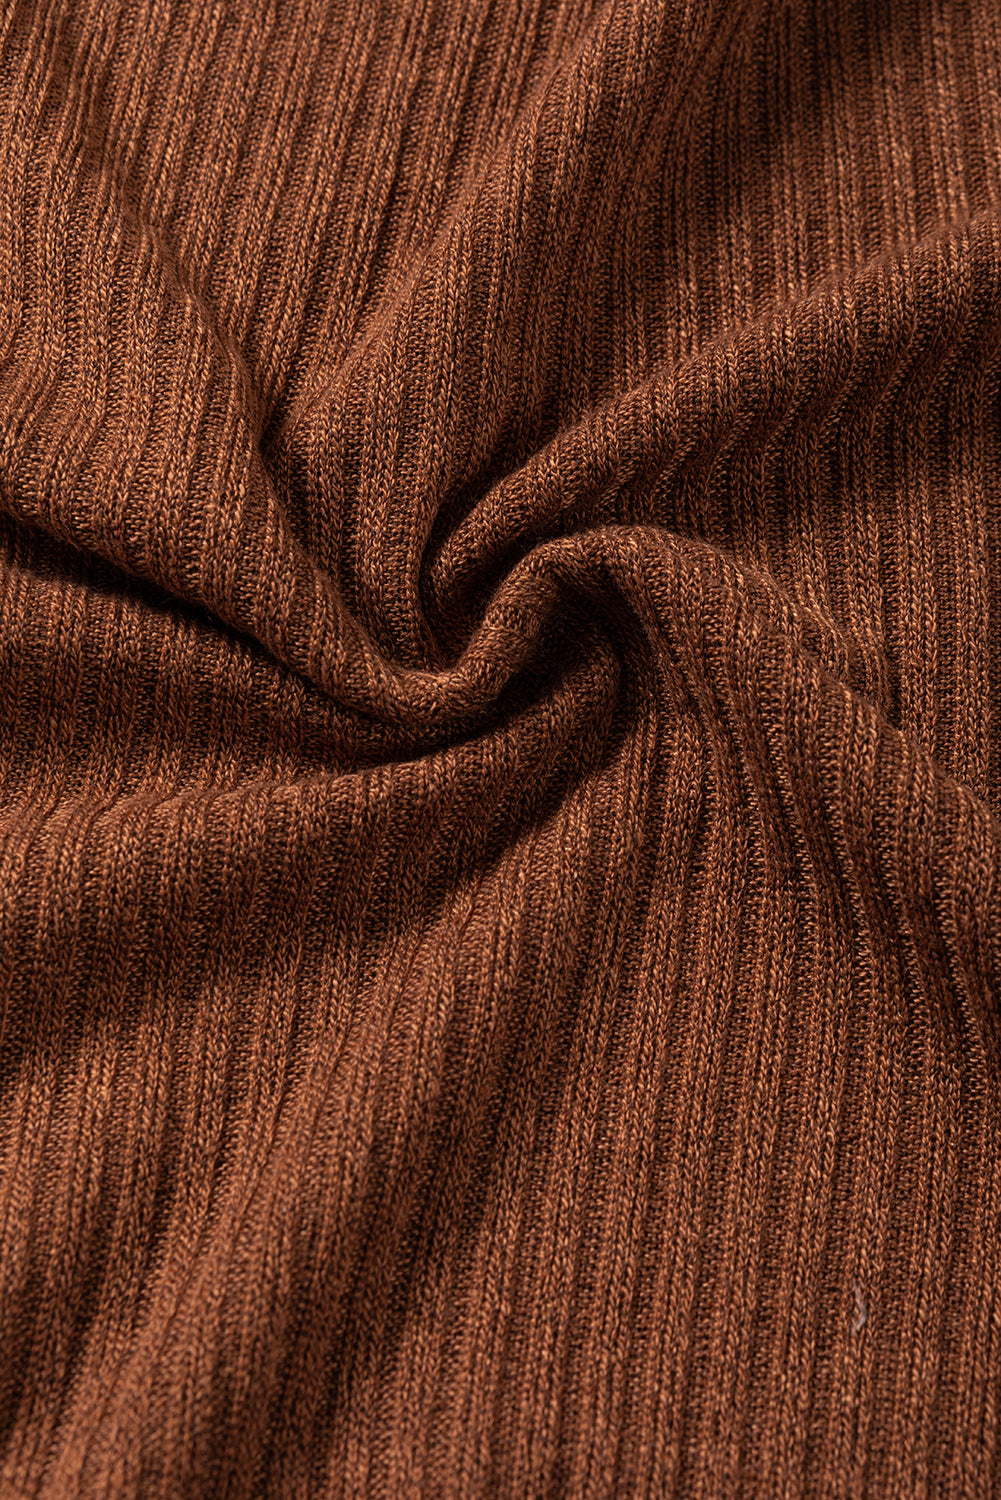 Haut texturé en tricot côtelé châtain à épaules tombantes et manches à volants